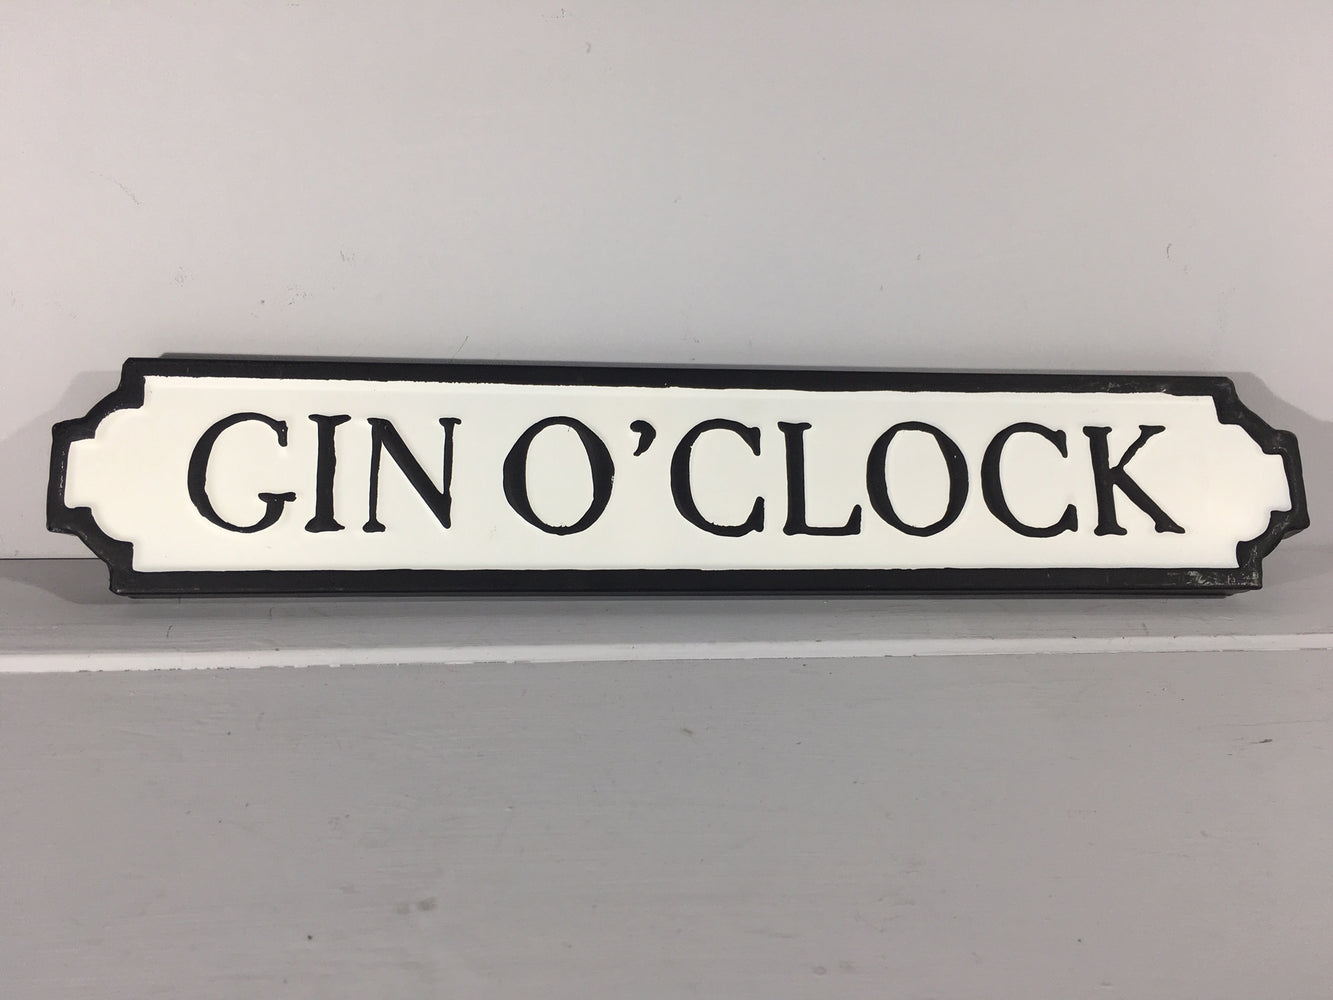 Gin O'Clock - Metal Road Sign